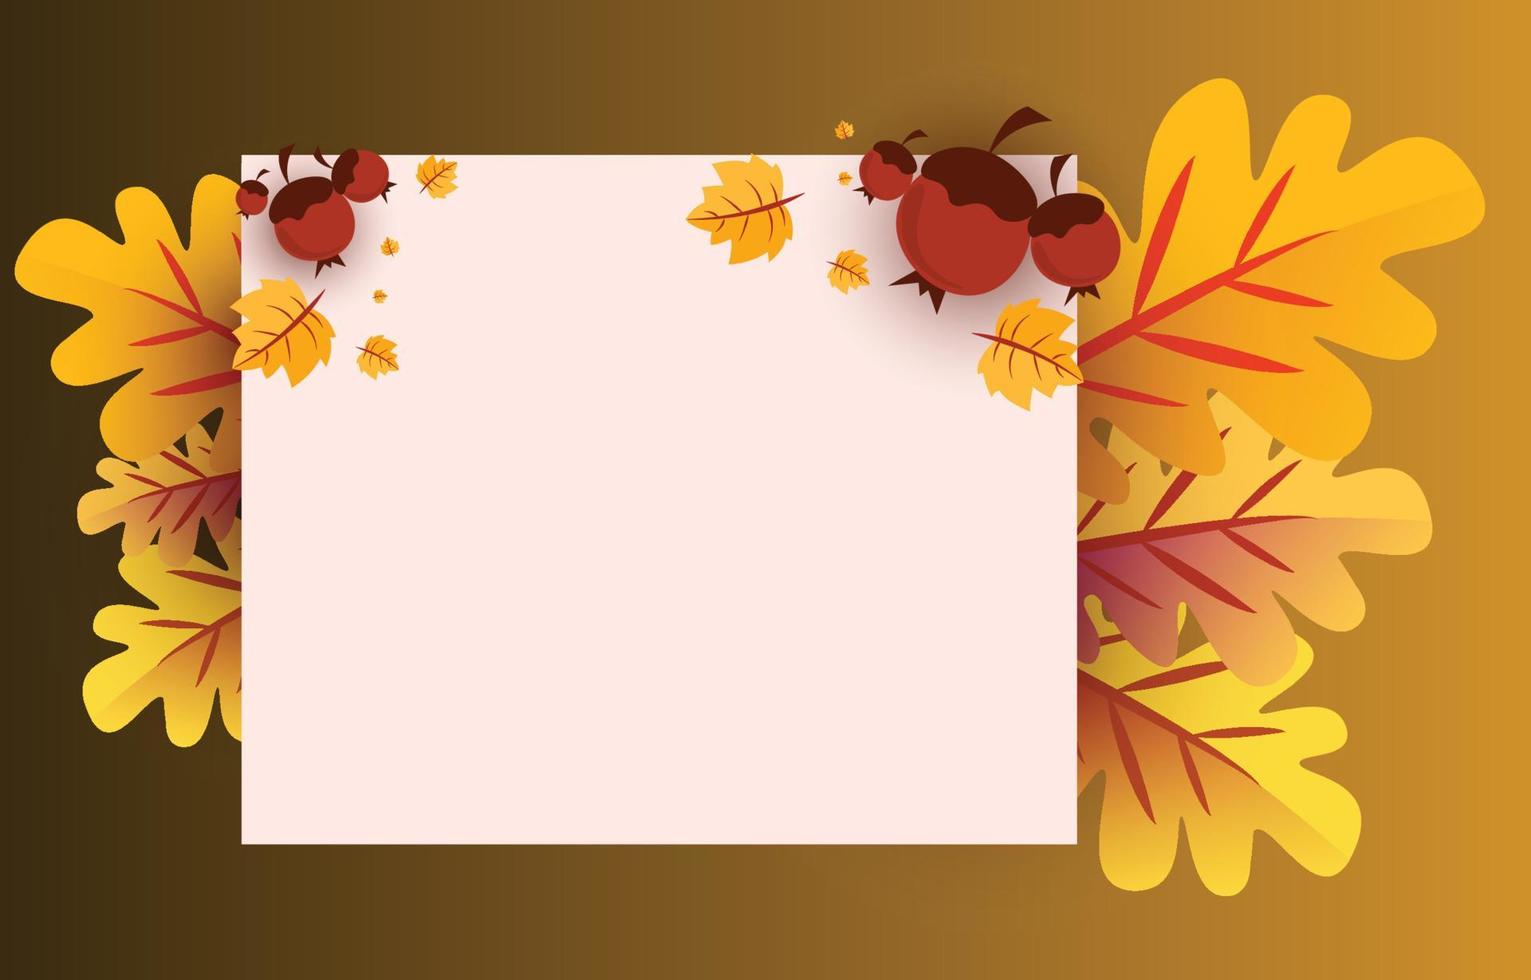 fundo de outono com folhas amarelas douradas com molduras quadradas e espaço livre, conceito de outono, para papel de parede, cartões postais, cartões, páginas do site, banners, vendas online. ilustração vetorial vetor